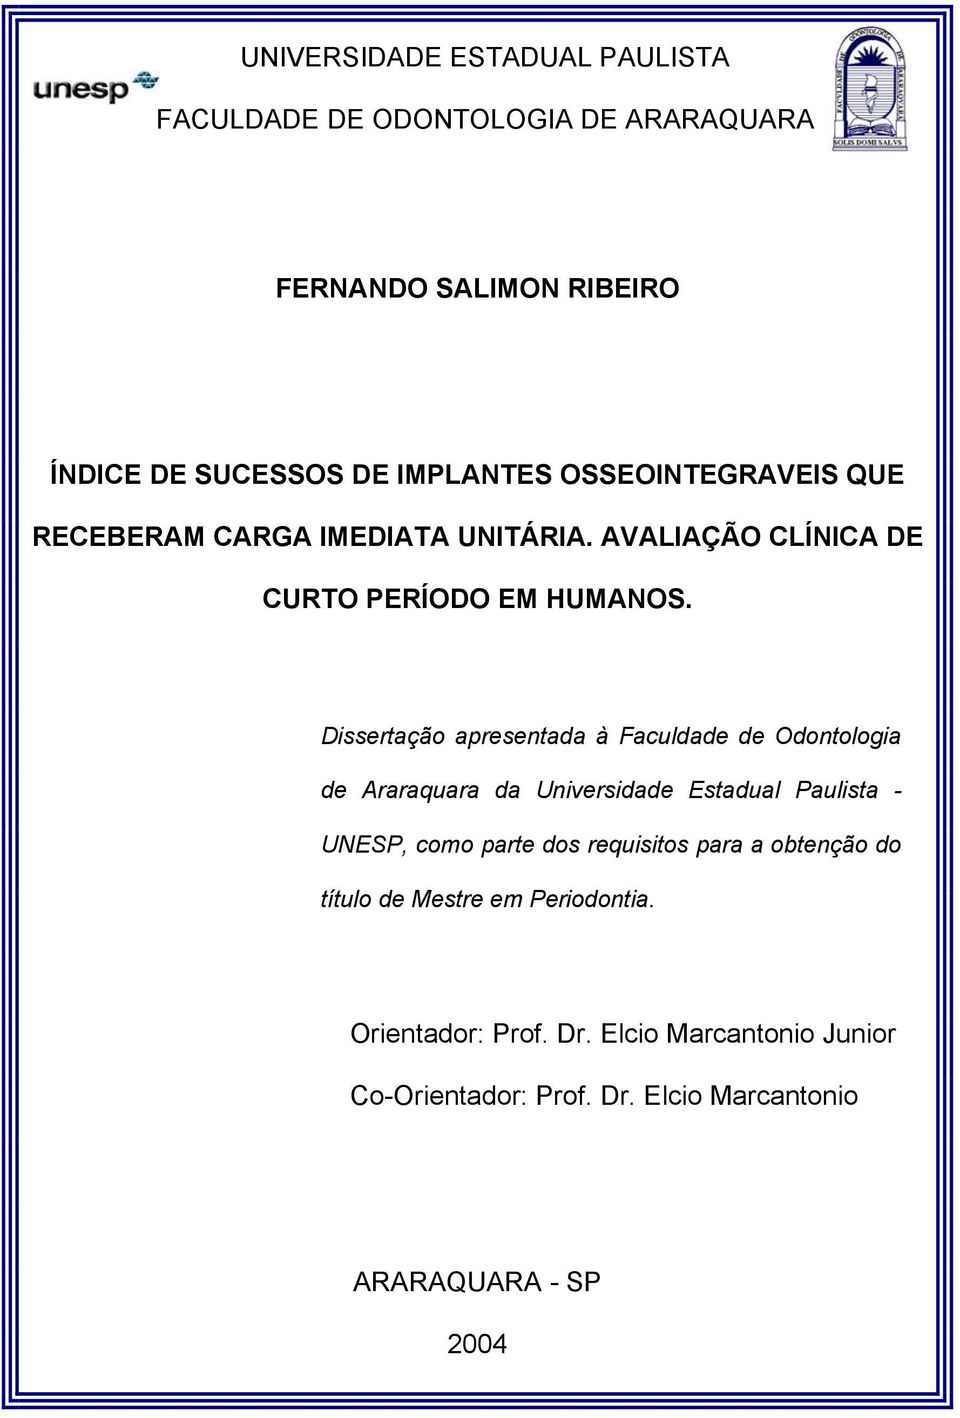 Dissertação apresentada à Faculdade de Odontologia de Araraquara da Universidade Estadual Paulista - UNESP, como parte dos